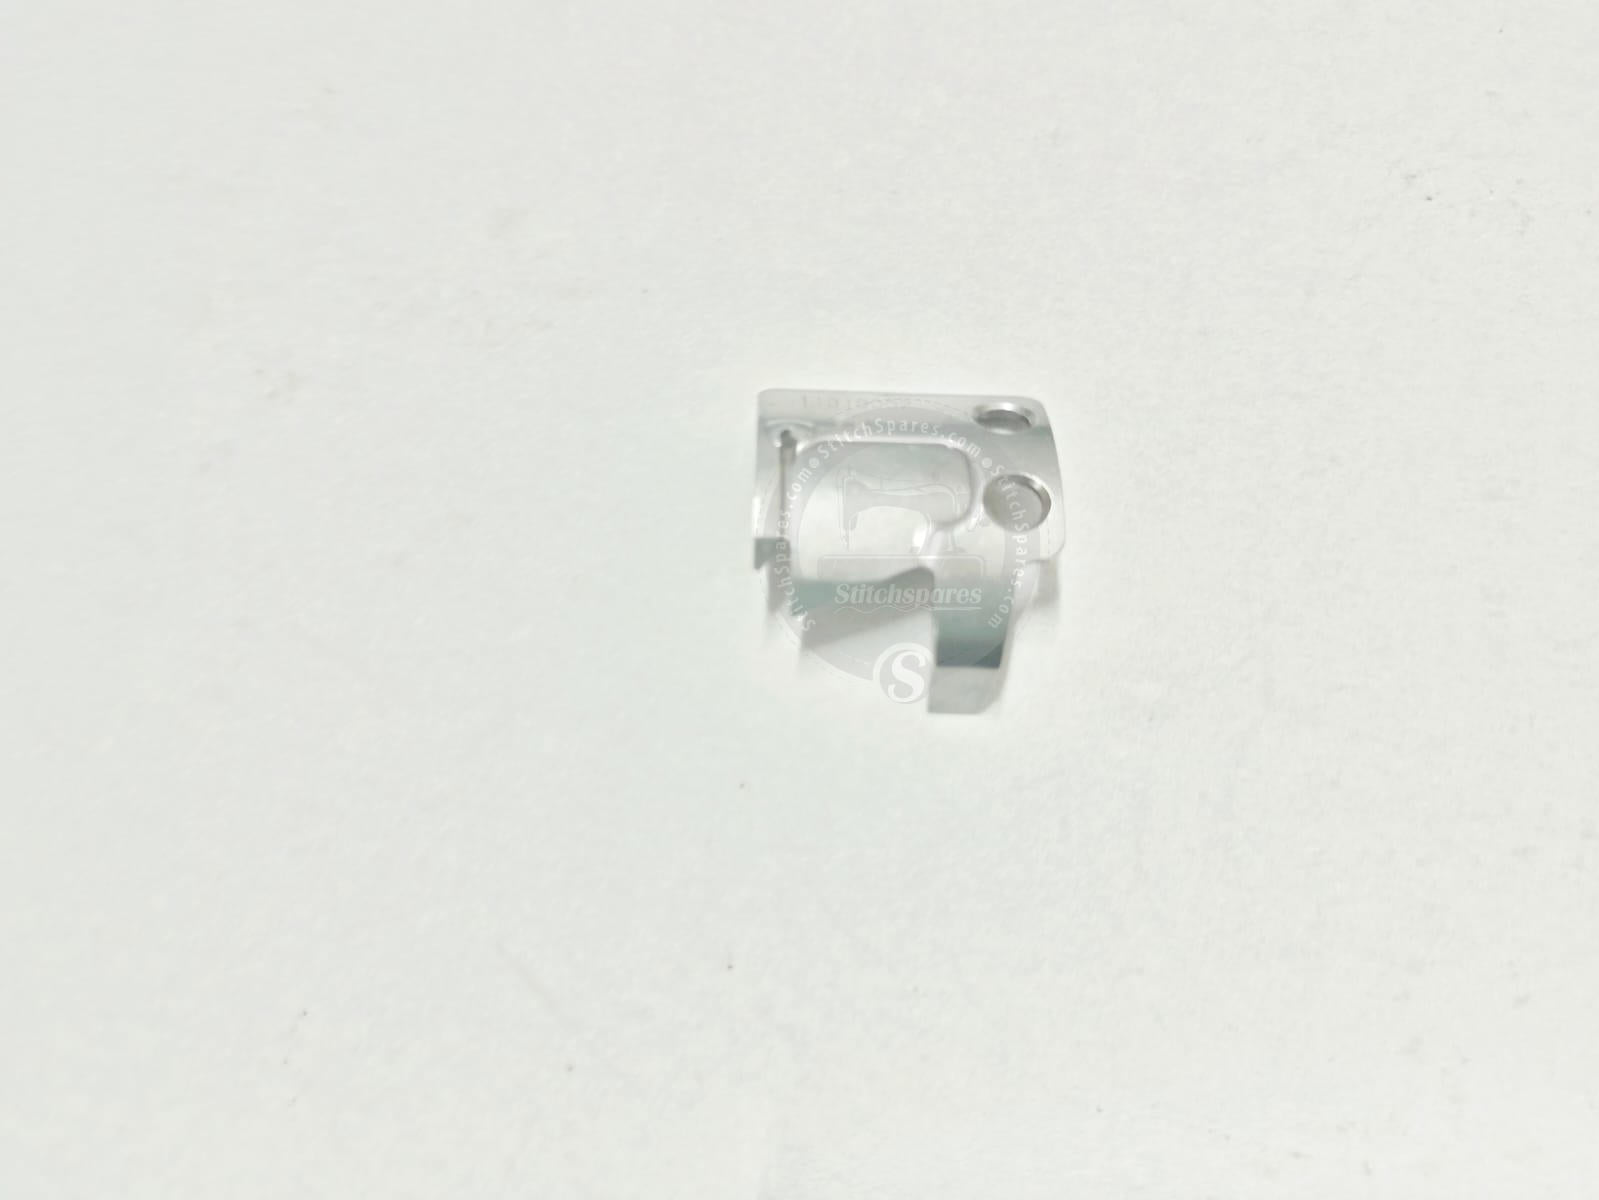 Cuchilla móvil JACK A2-BC (PIEZAS ORIGINALES JACK) Pieza de repuesto para máquina de coser LockStitch de aguja única PARTE NO: 11319002